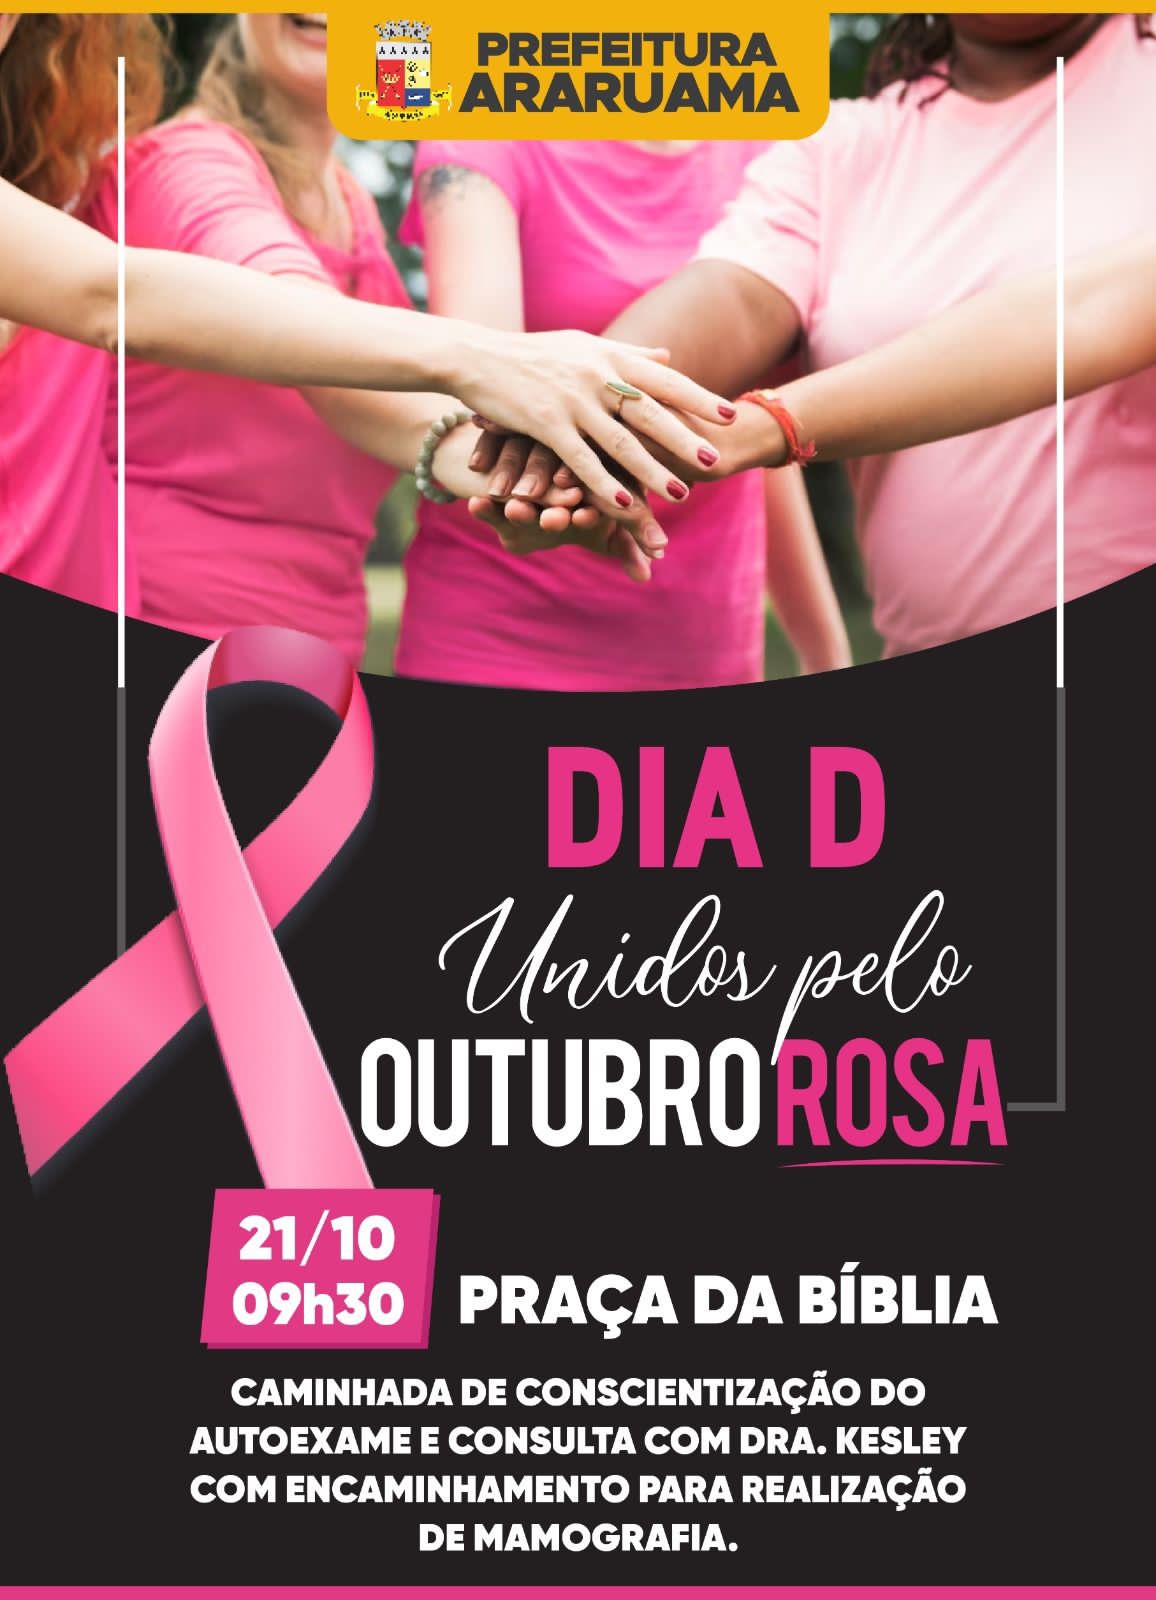 Prefeitura vai realizar ações durante todo o mês do “Outubro Rosa” para alertar sobre a importância da prevenção ao câncer de mama